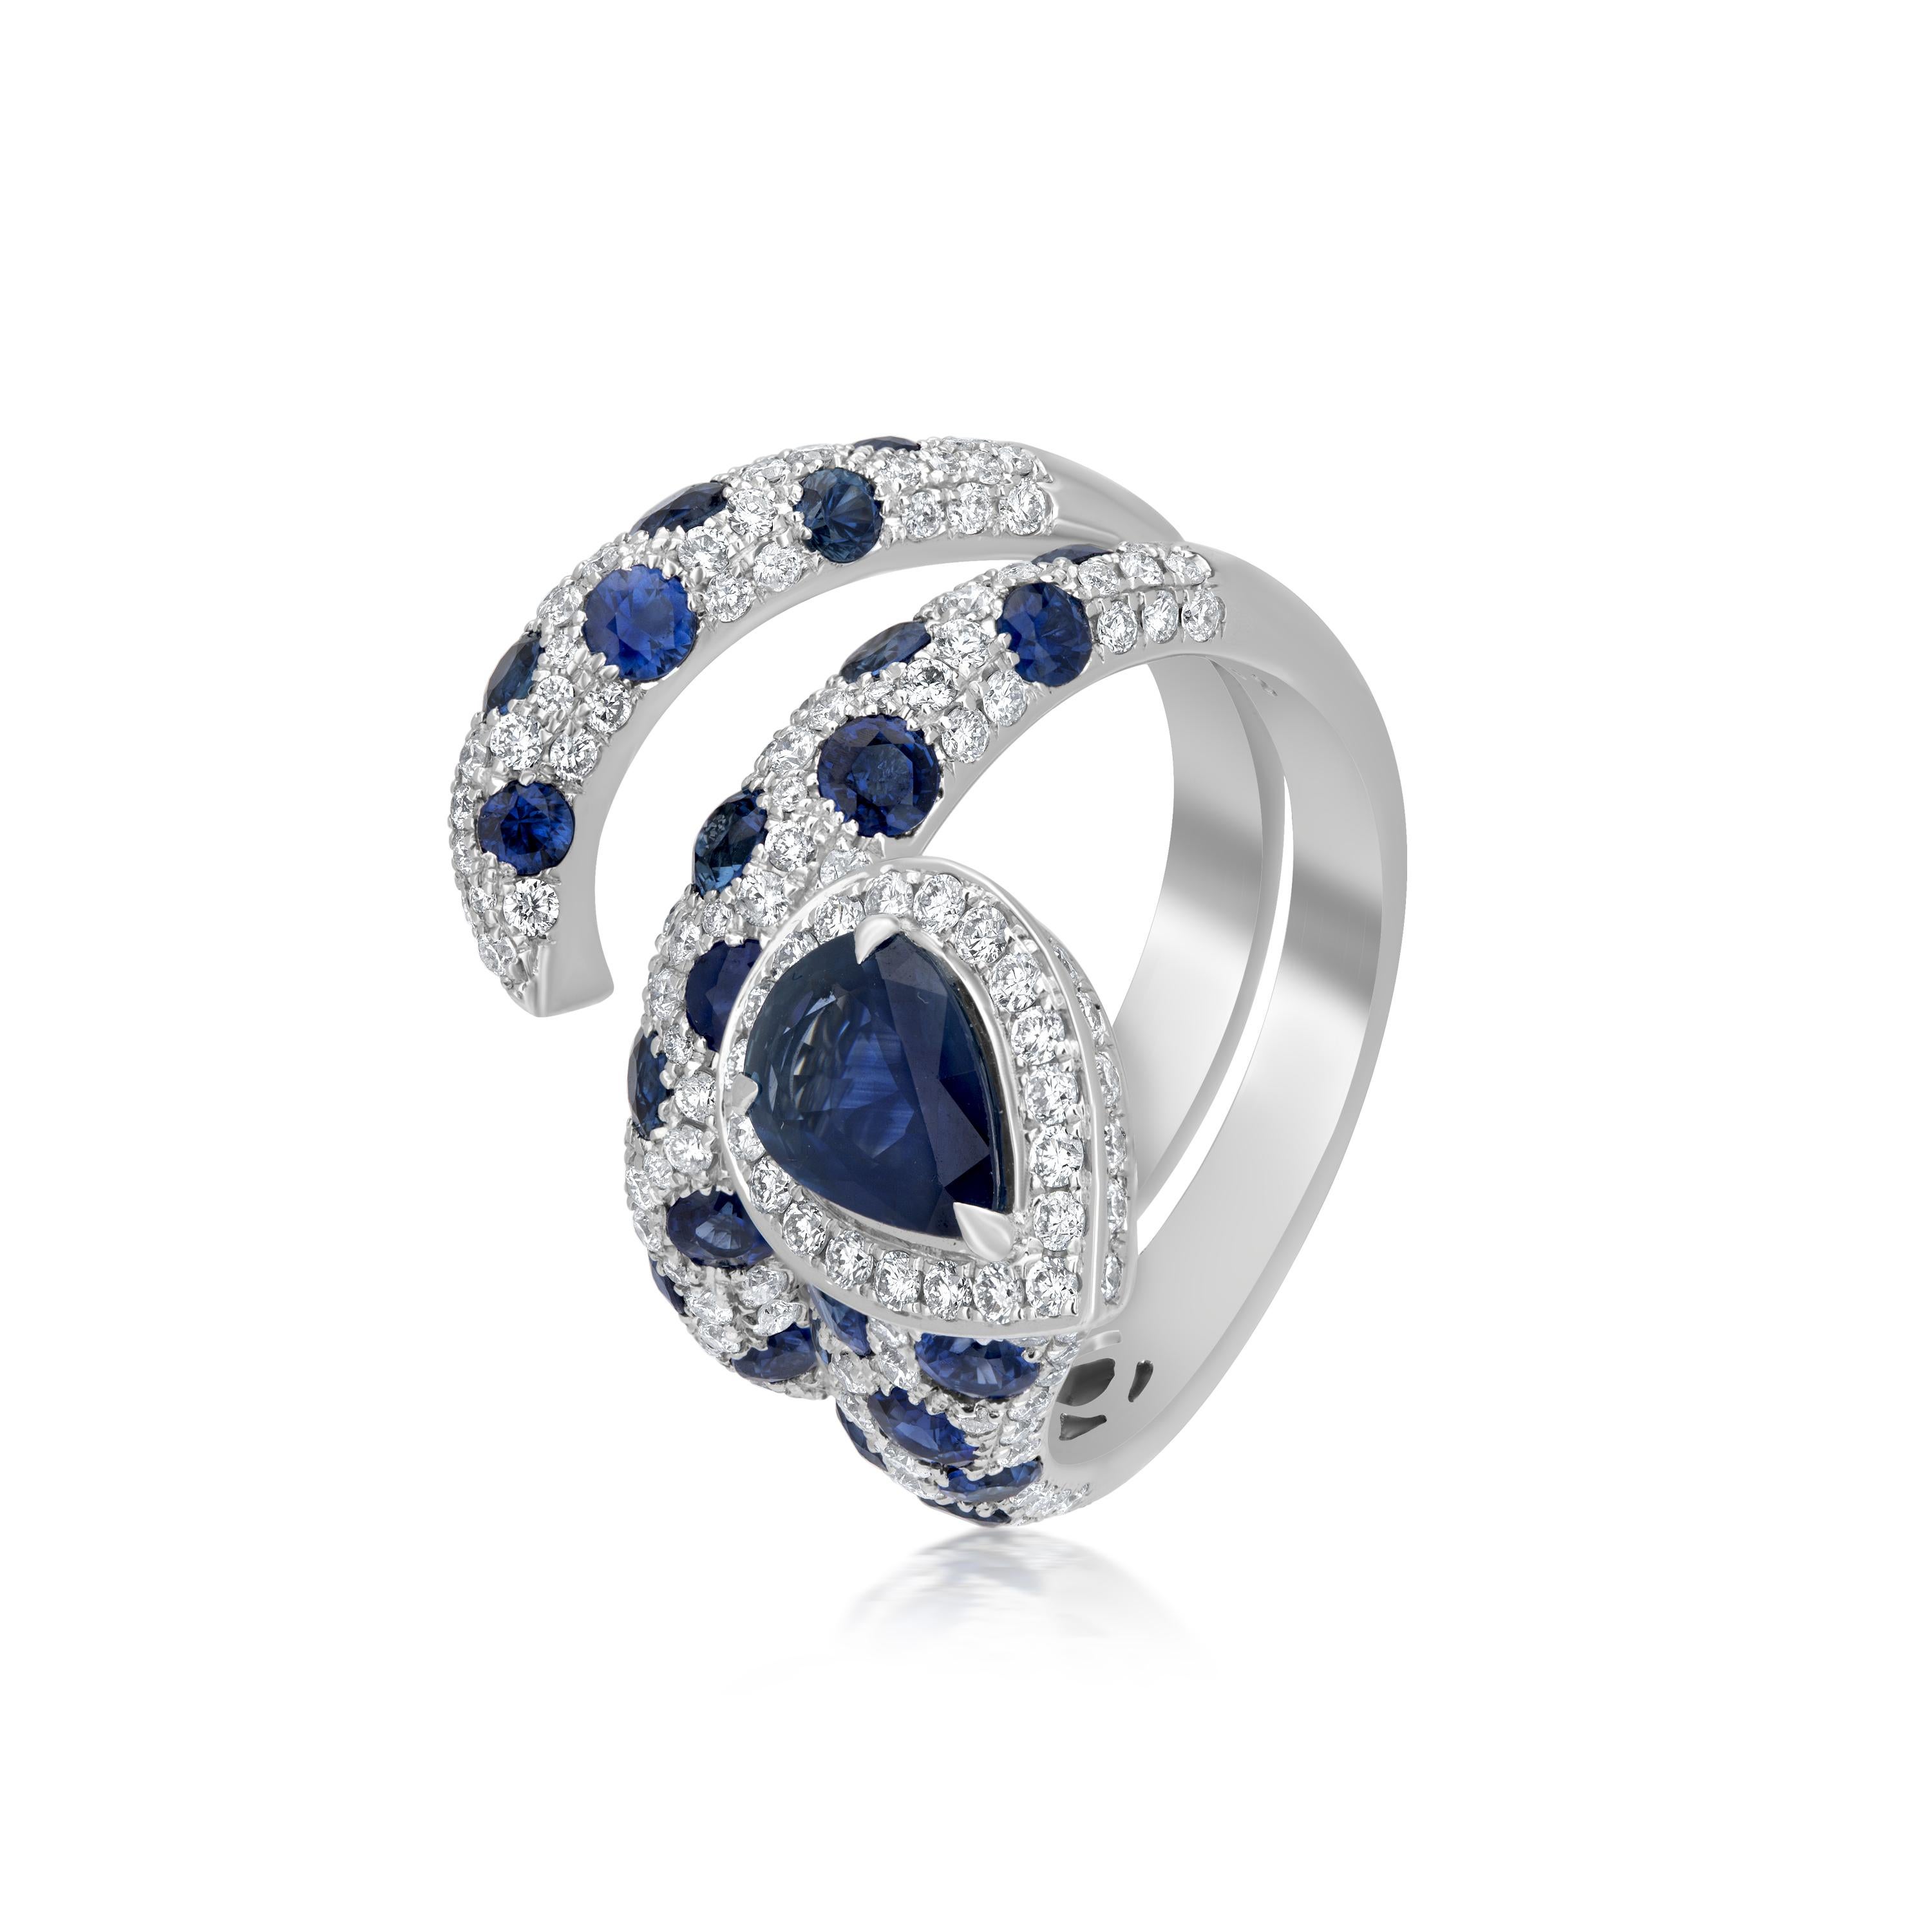 Wirbeln Sie an Ihrem Verlobungstag mit diesem Wirbelring in einem wunderschönen Saree. Dieser von Nigaam auf einem Körper aus 18-karätigem Weißgold gefertigte Ring ist mit runden Diamanten im Vollschliff und blauen Saphiren im Rund- und